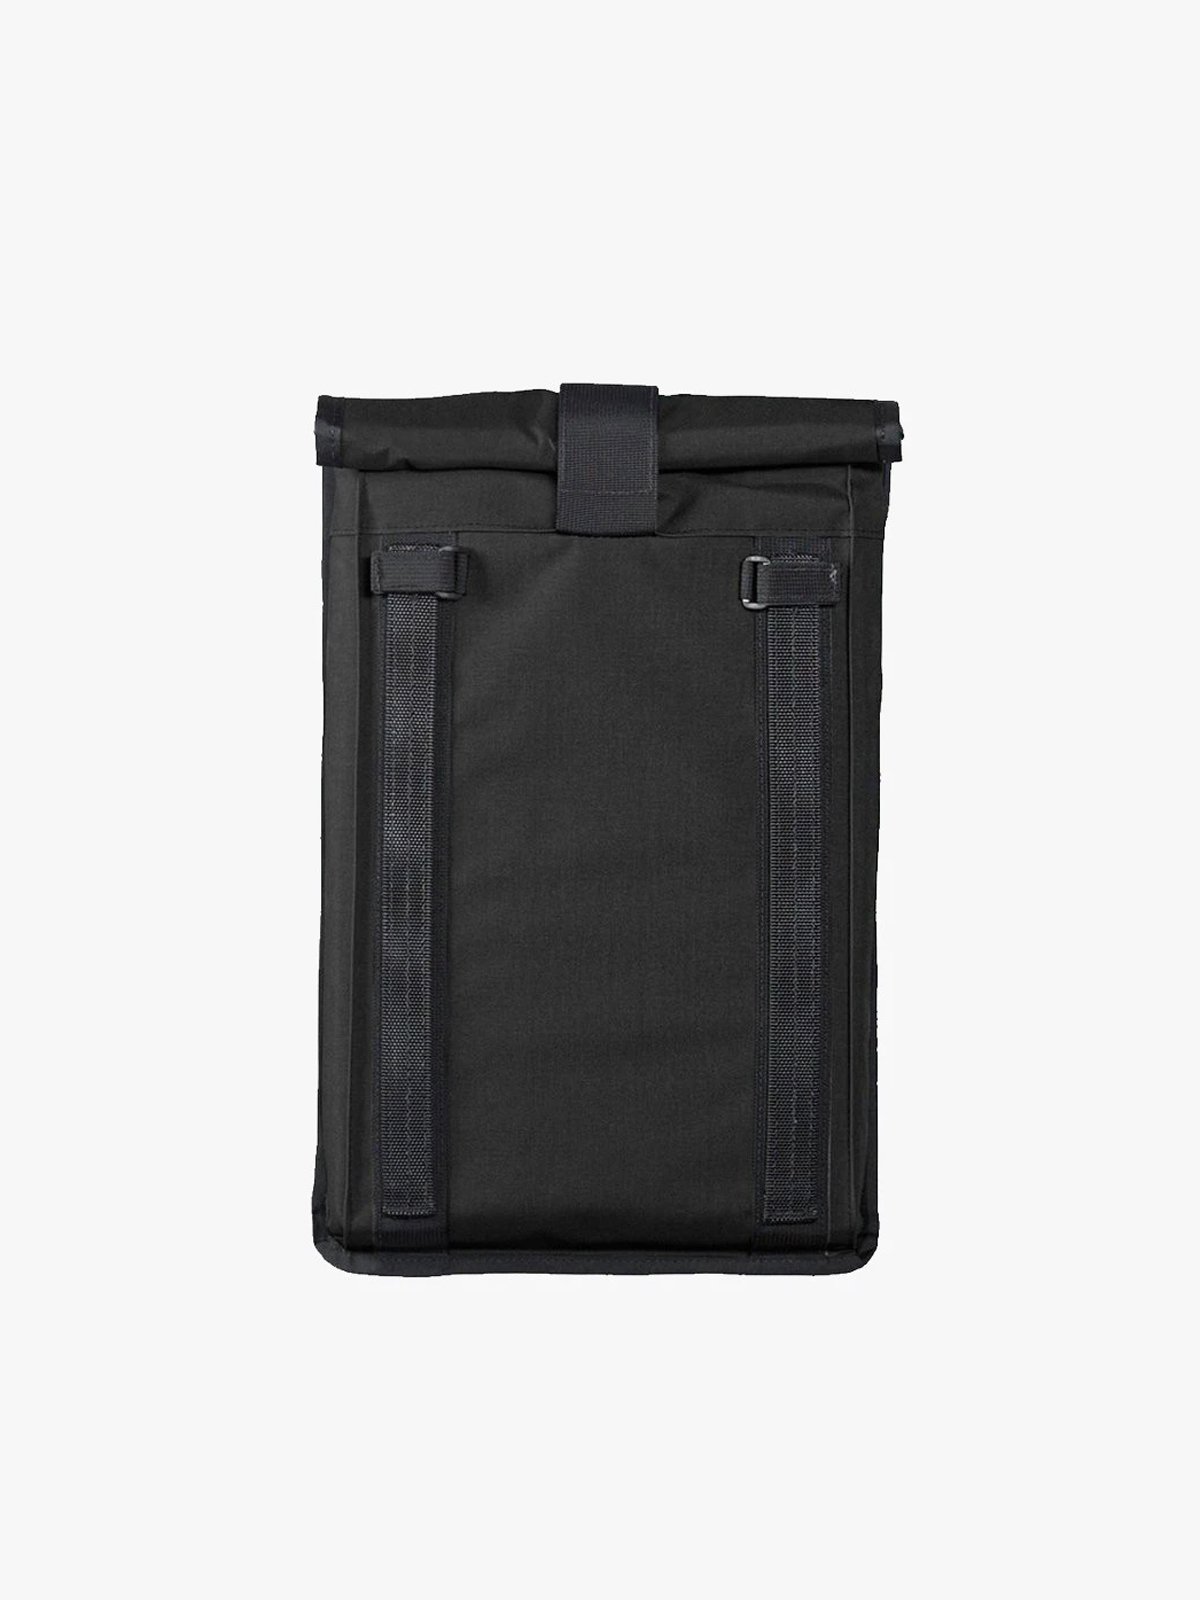 Arkiv Laptop-Tasche von Mission Workshop - Wetterfeste Taschen & Technische Bekleidung - San Francisco & Los Angeles - Für die Ewigkeit gebaut - Garantiert